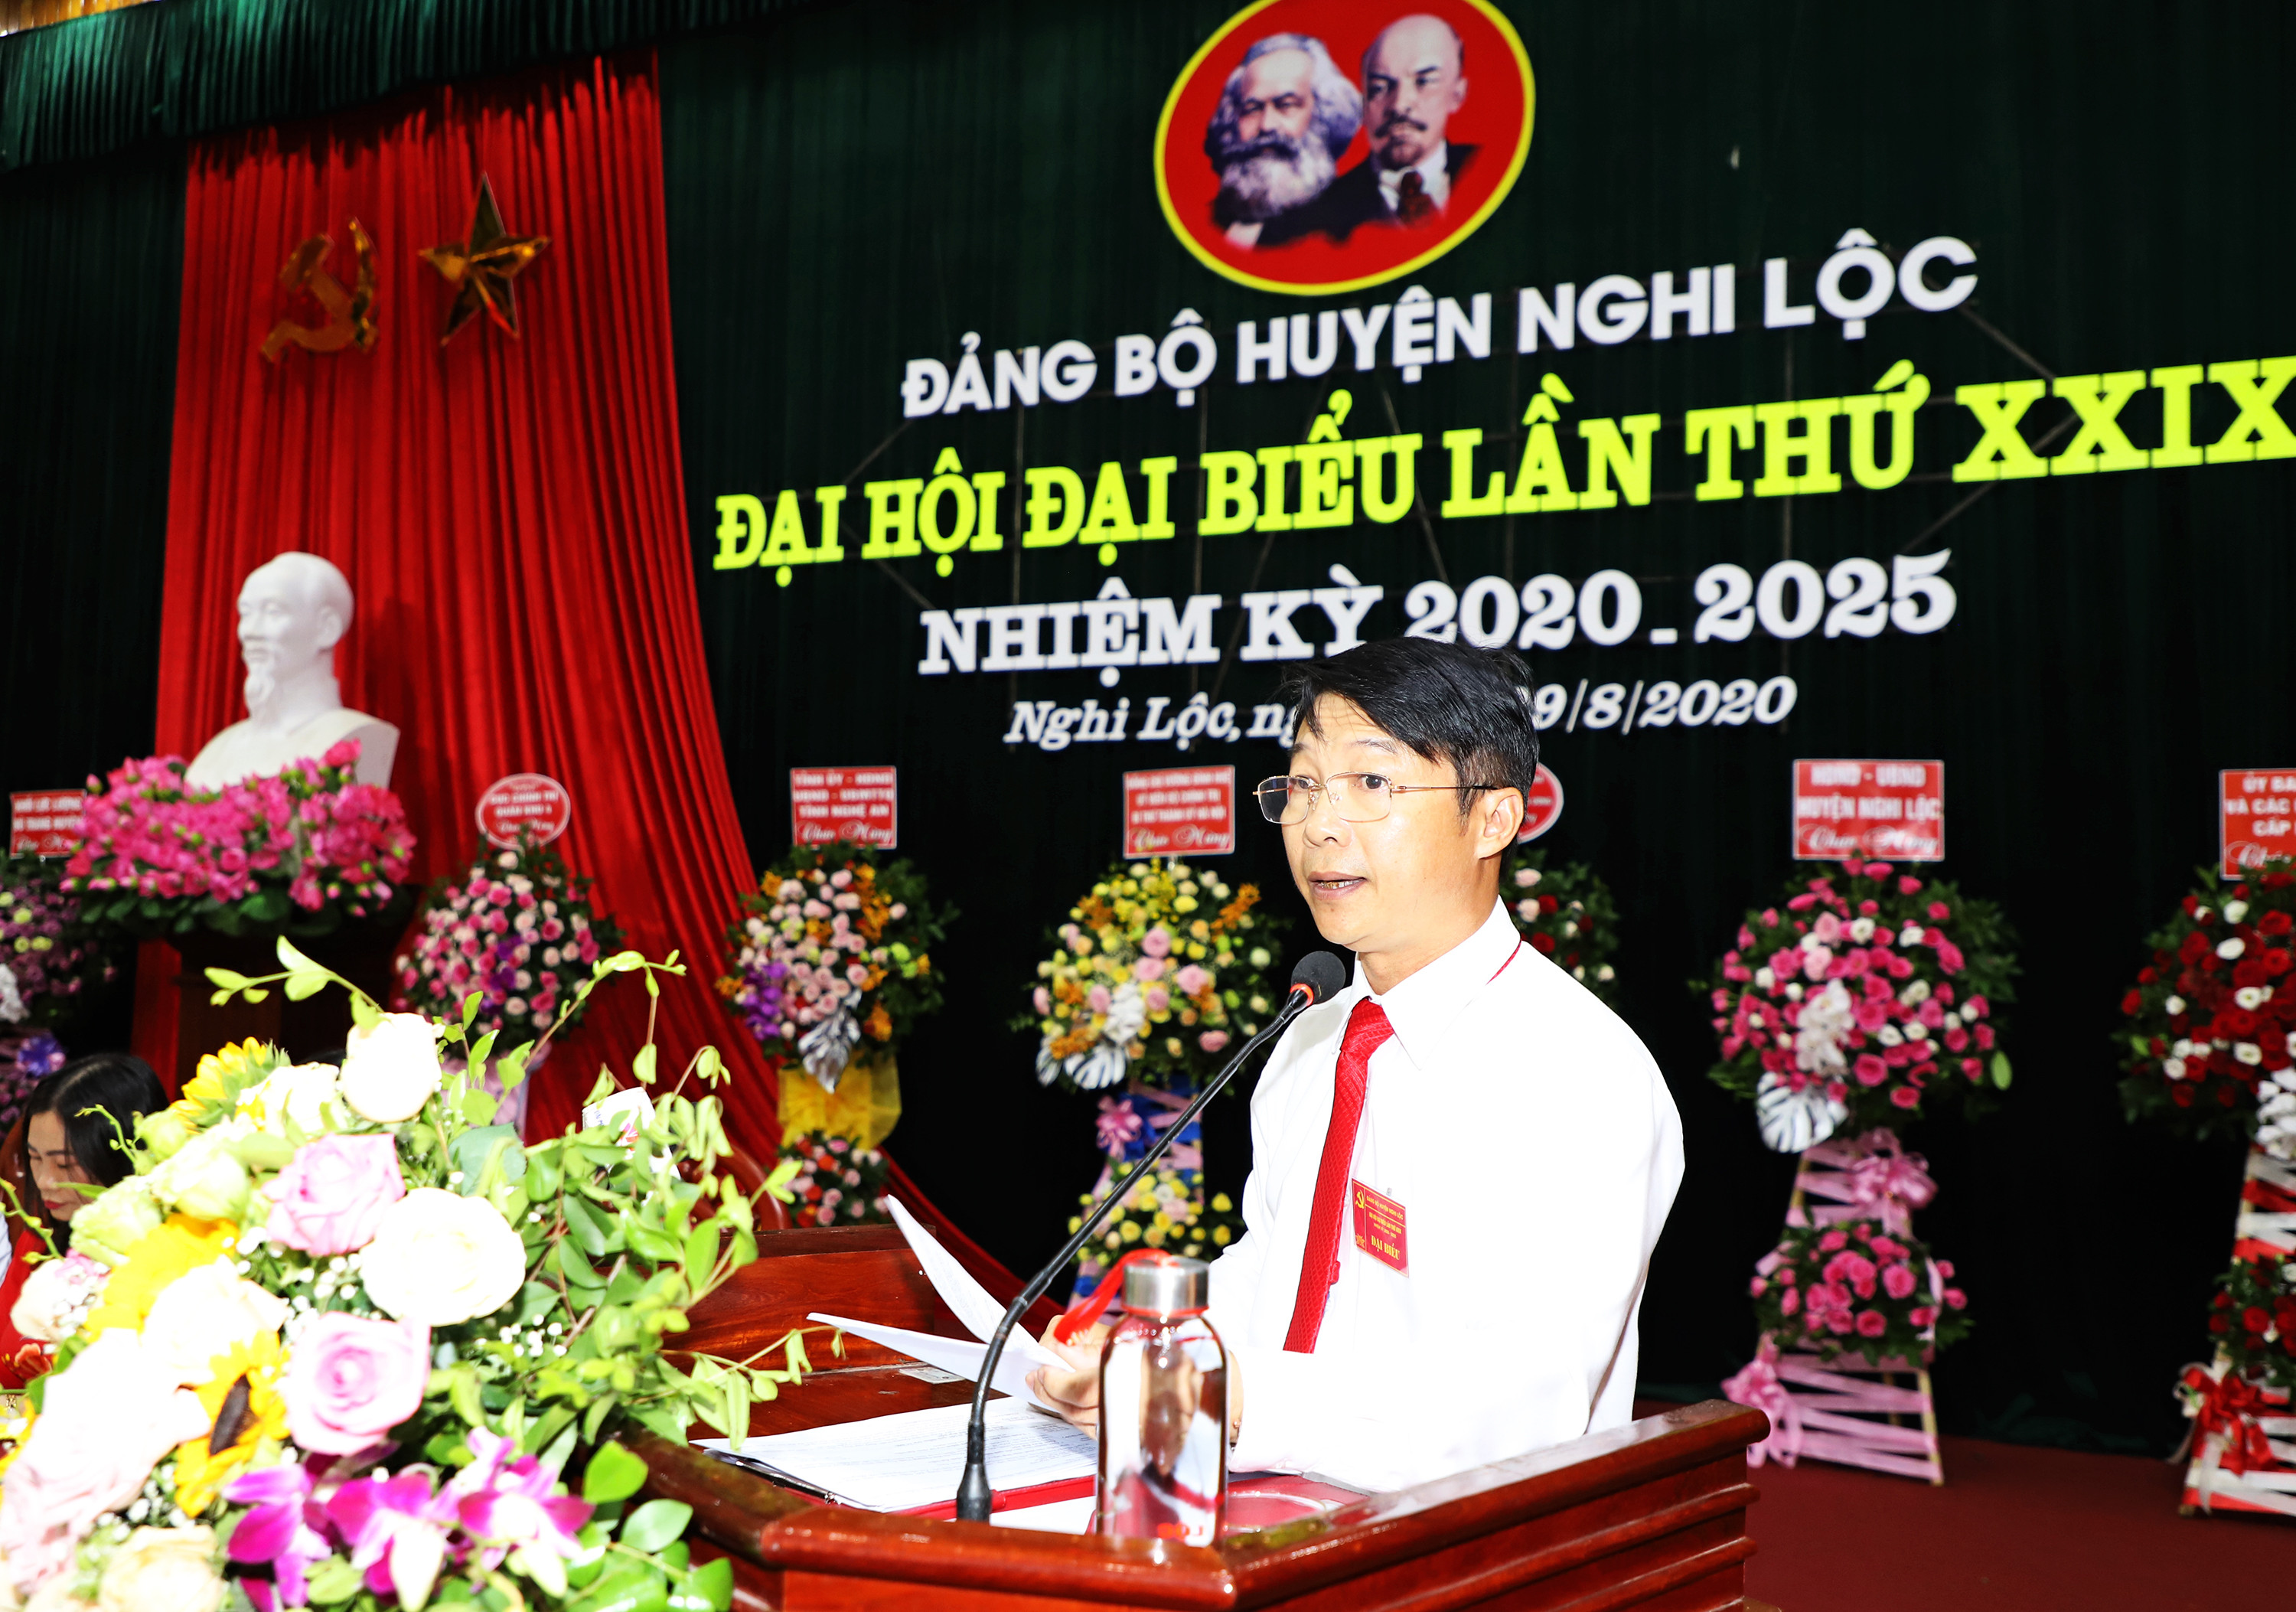 Đồng chí Nguyễn Tiến Dũng - Phó Bí thư Huyện ủy, Chủ tịch UBND huyện trình bày báo cáo chính trị. Ảnh: Phạm Bằng